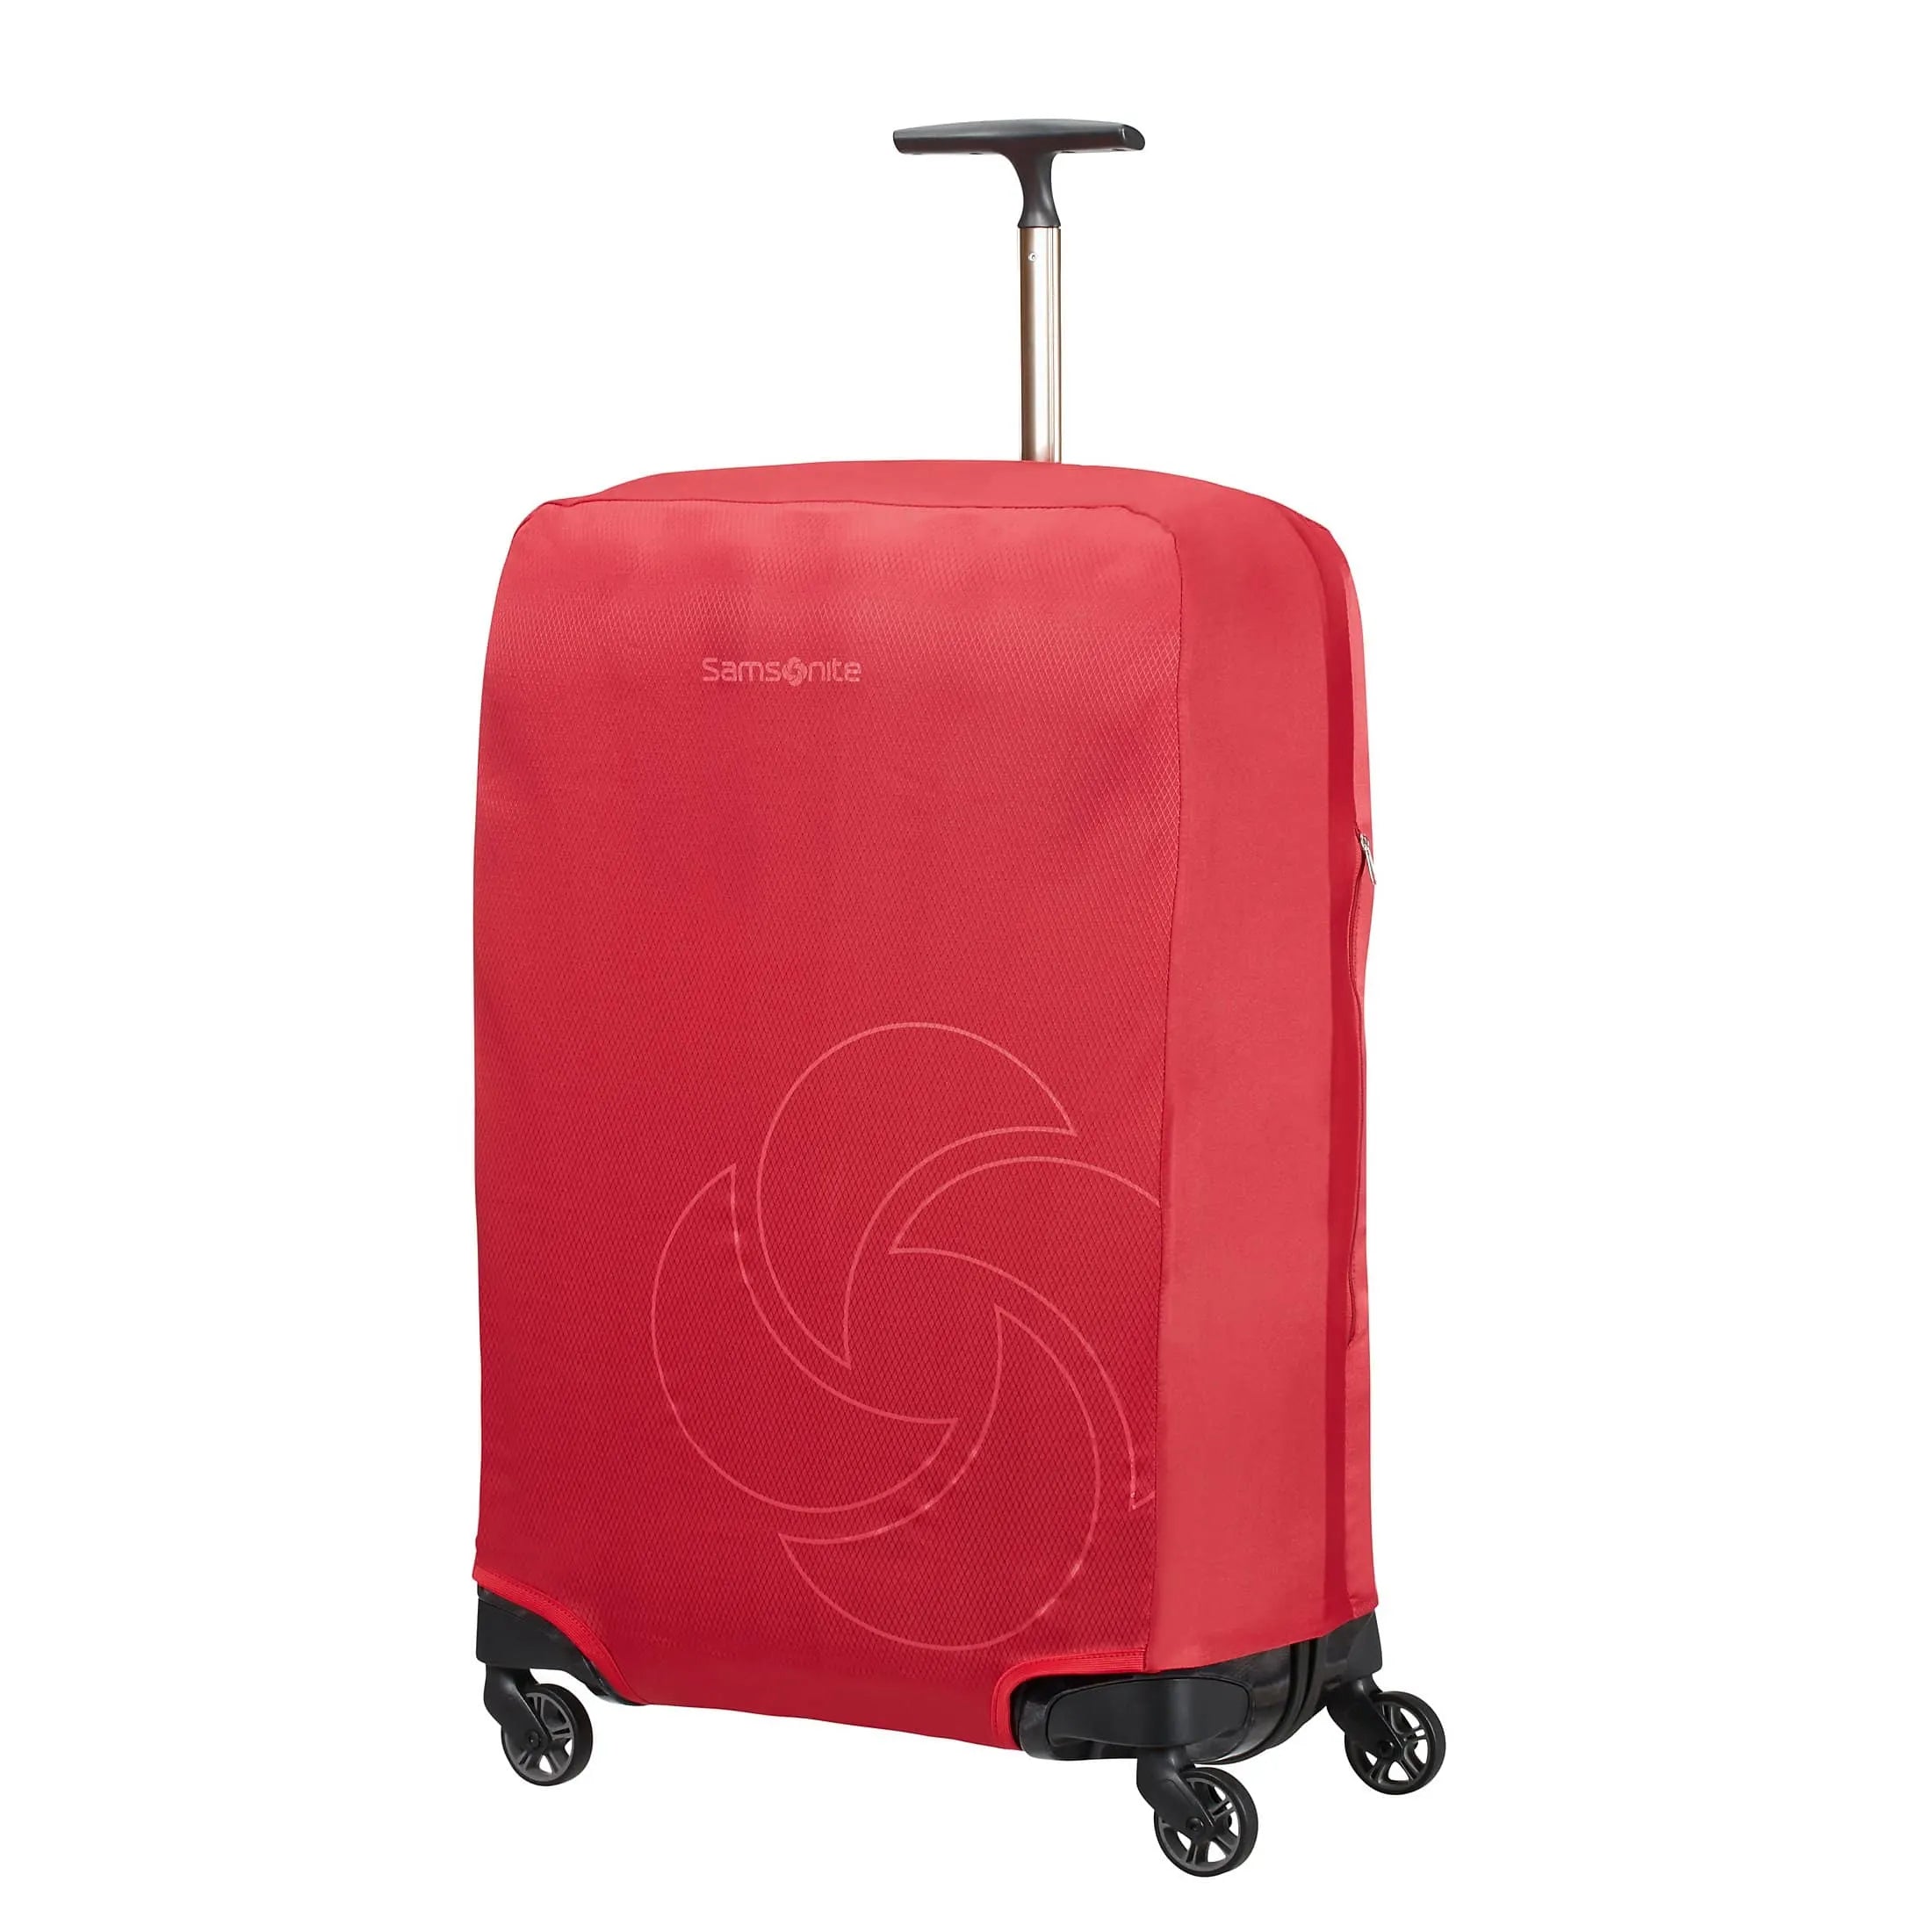 Samsonite Travel Accessories suitcase cover M 69 cm - black